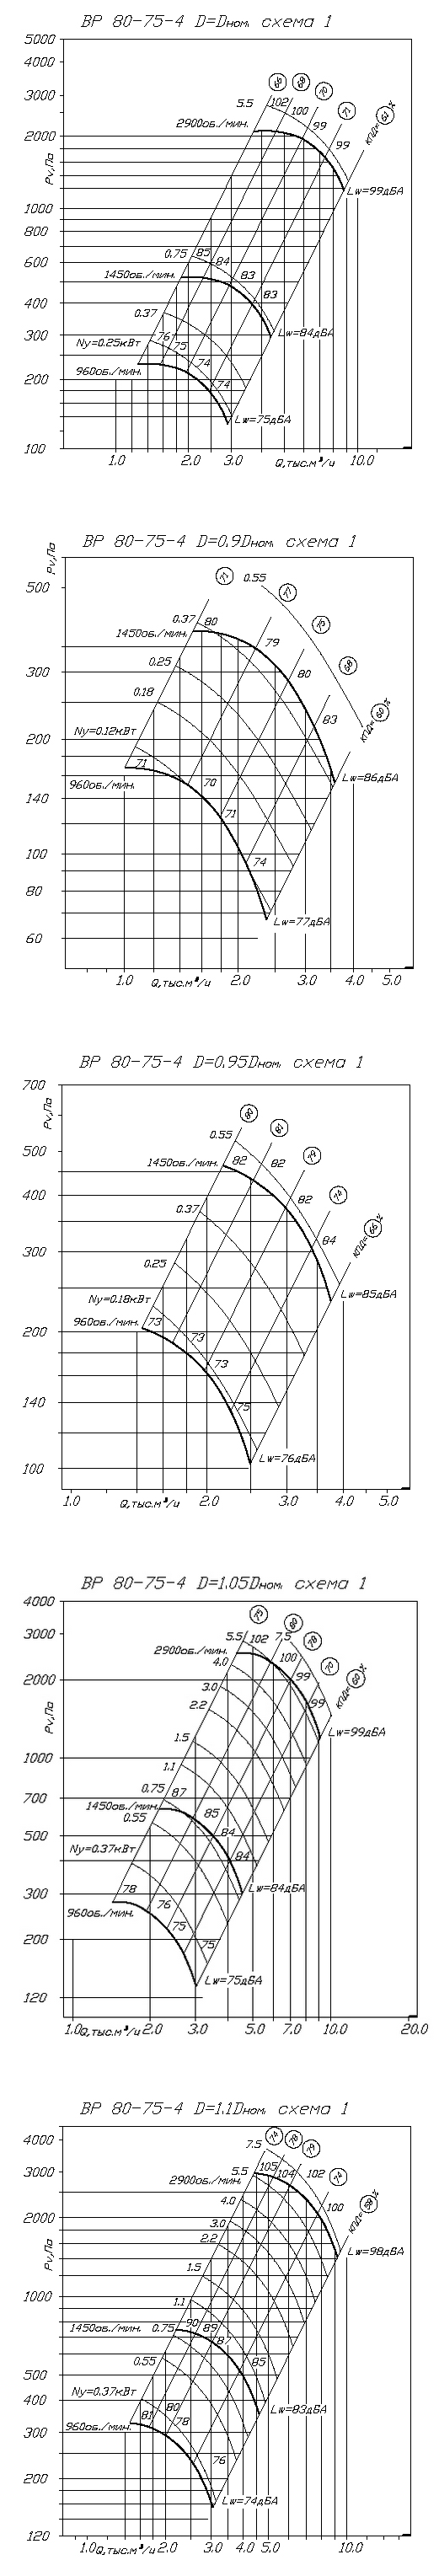 Аэродинамические характеристики вентилятора ВР 80-75 №4